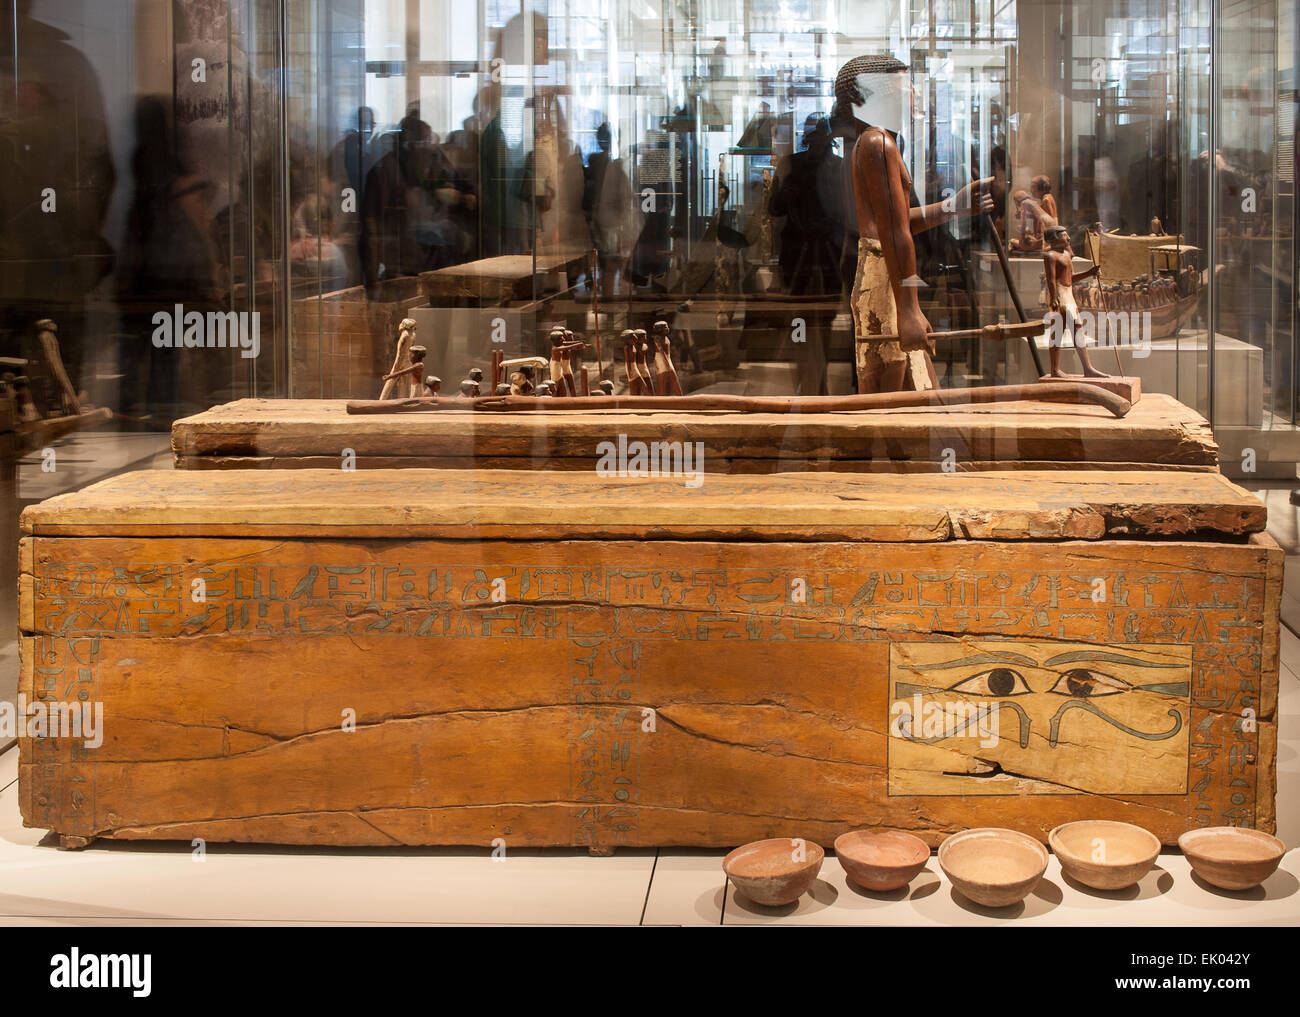 Italia Piemonte Torino Museo Egizio nuovo allestimento - Sala 4 - La tomba di Shemes (1980 - 1700 BC ) Foto Stock